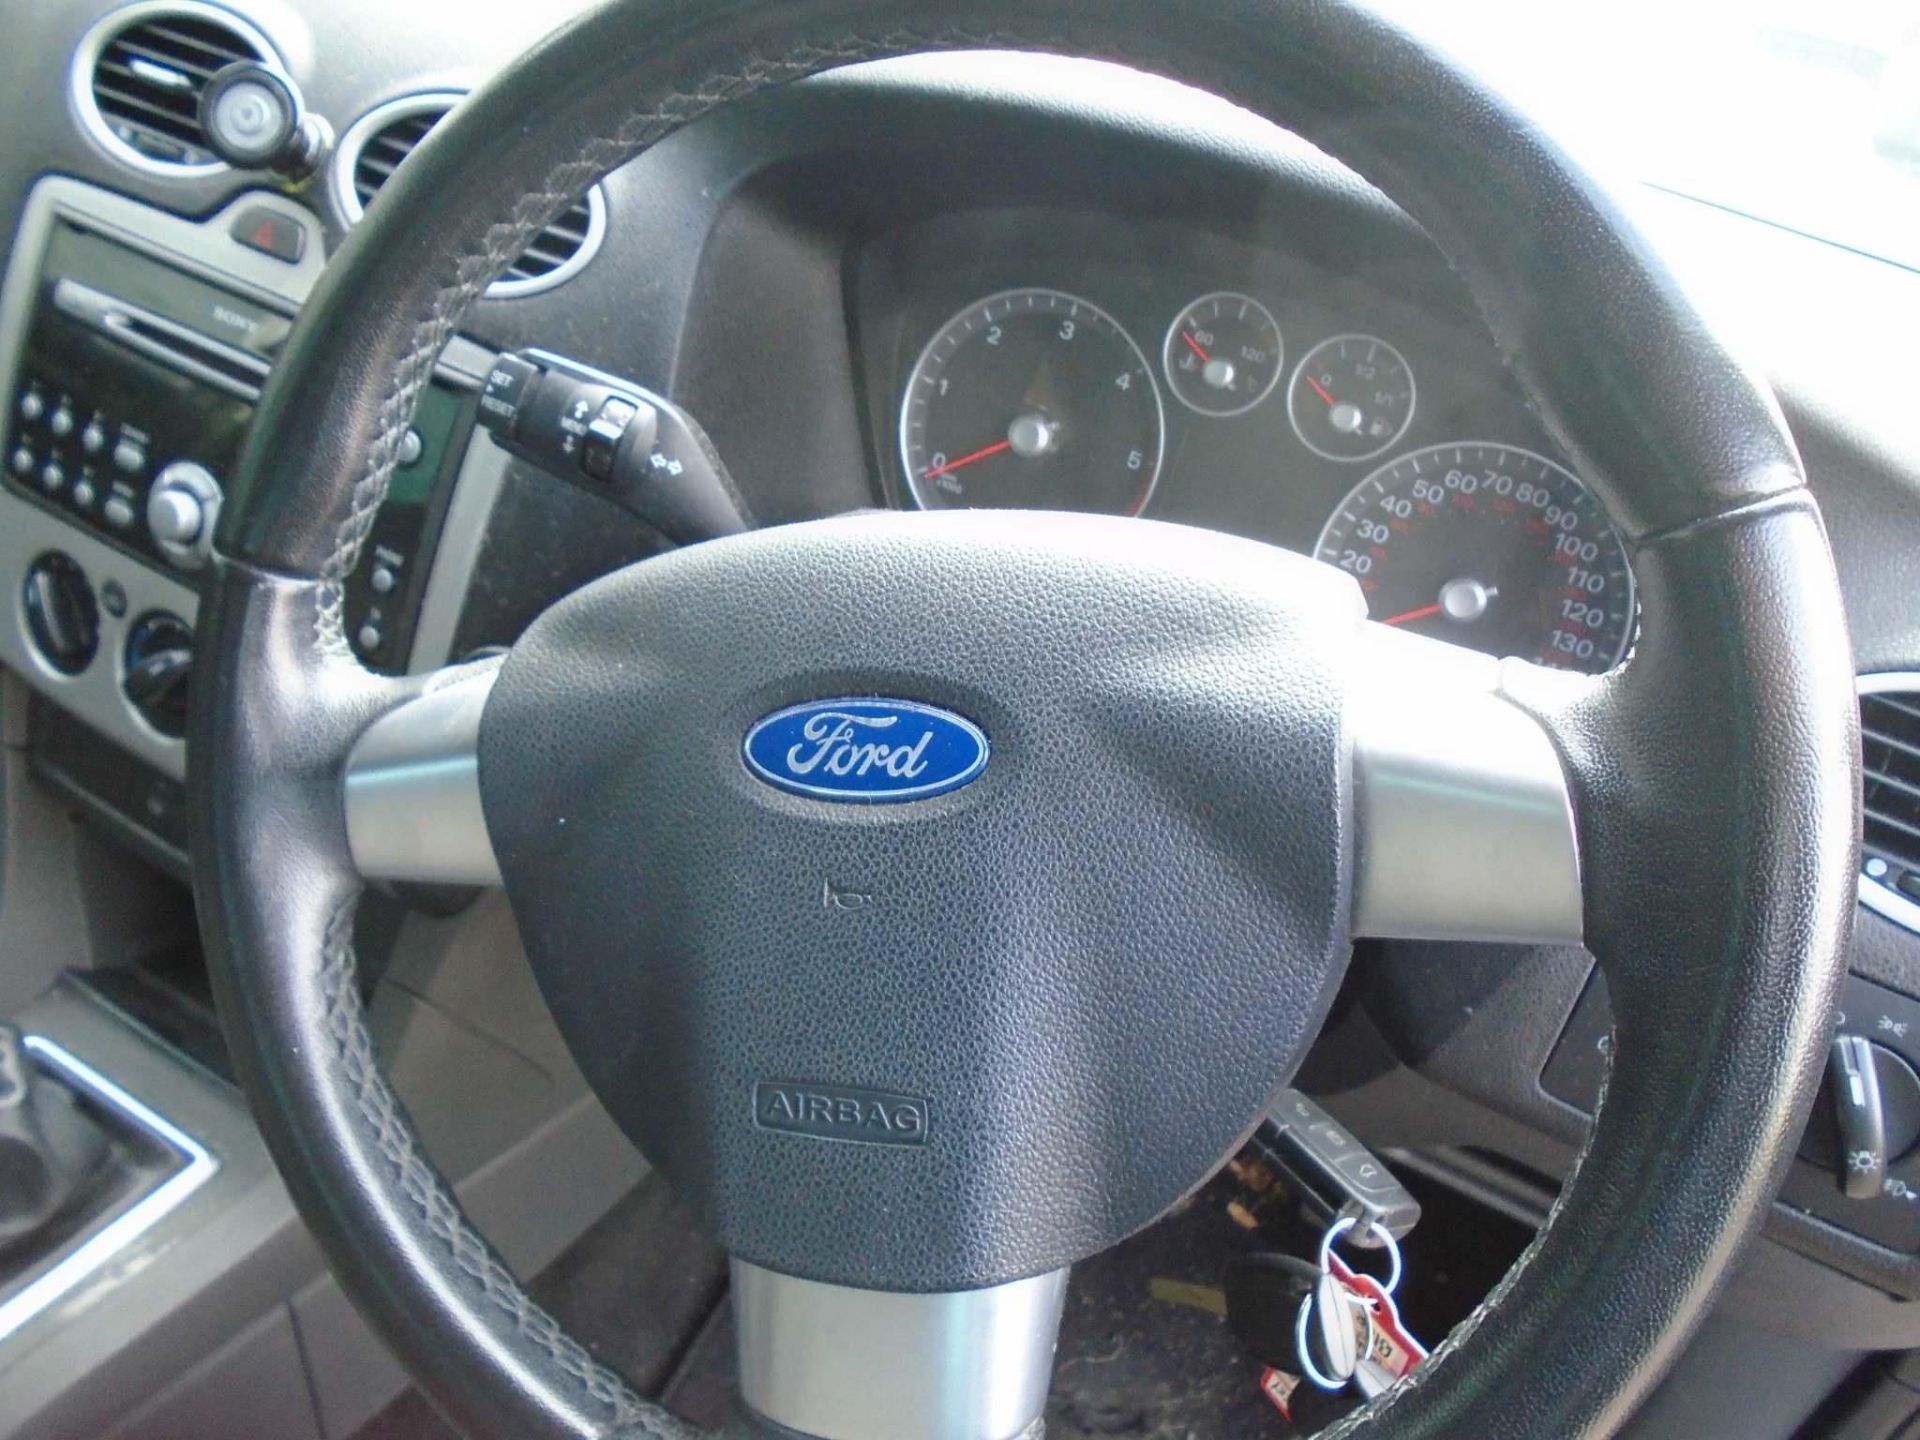 2007 Ford Focus 1.8 TDCI Titanium 5 Door Hatchback - Image 17 of 17